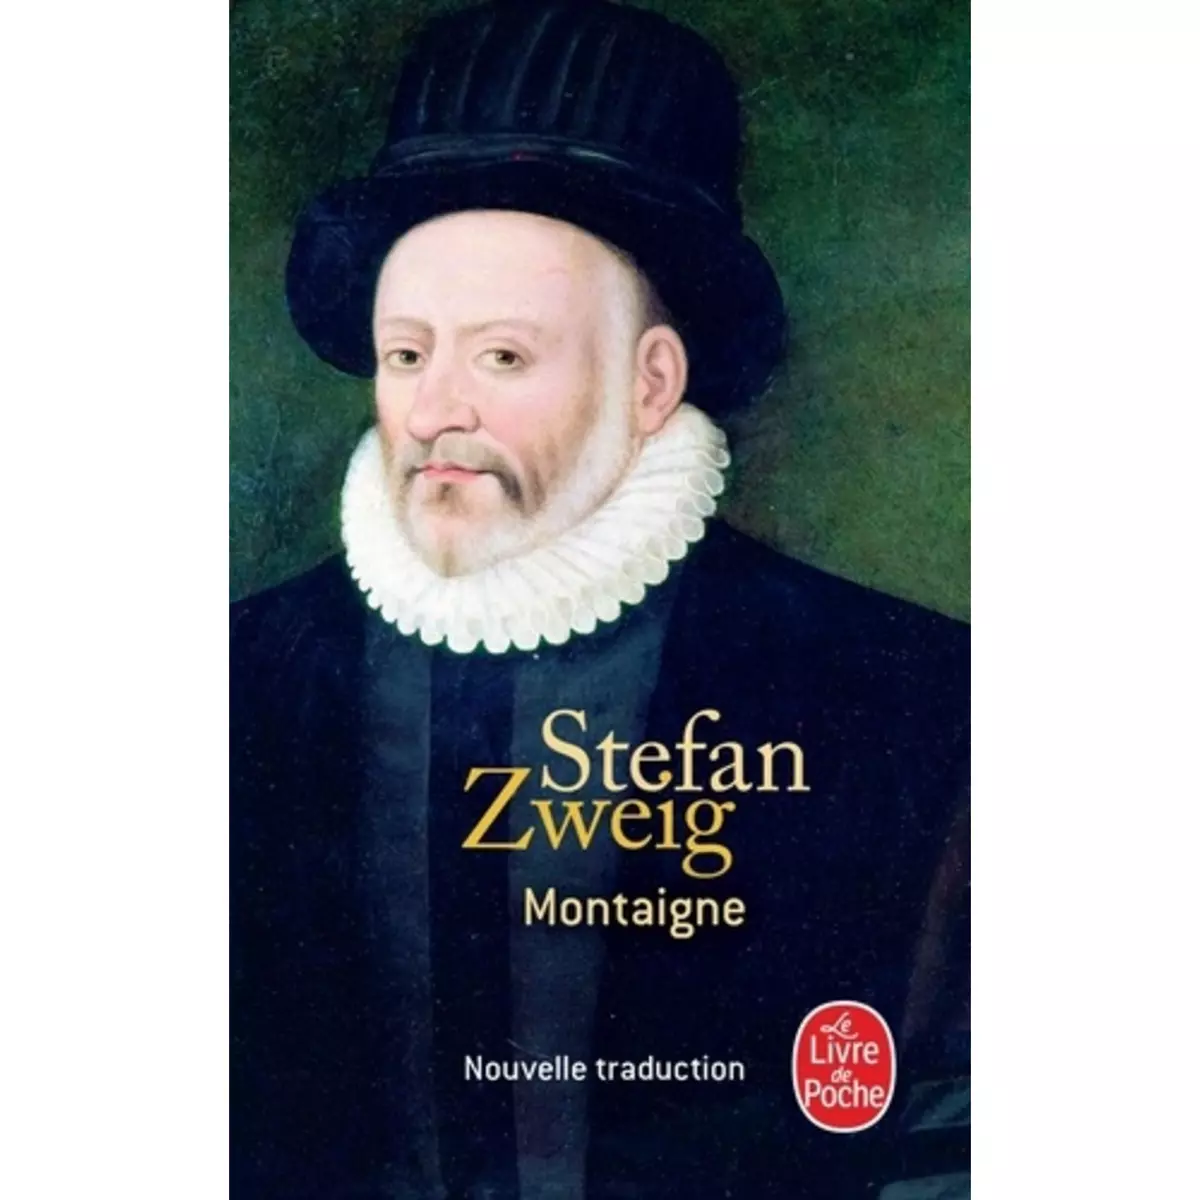  MONTAIGNE, Zweig Stefan